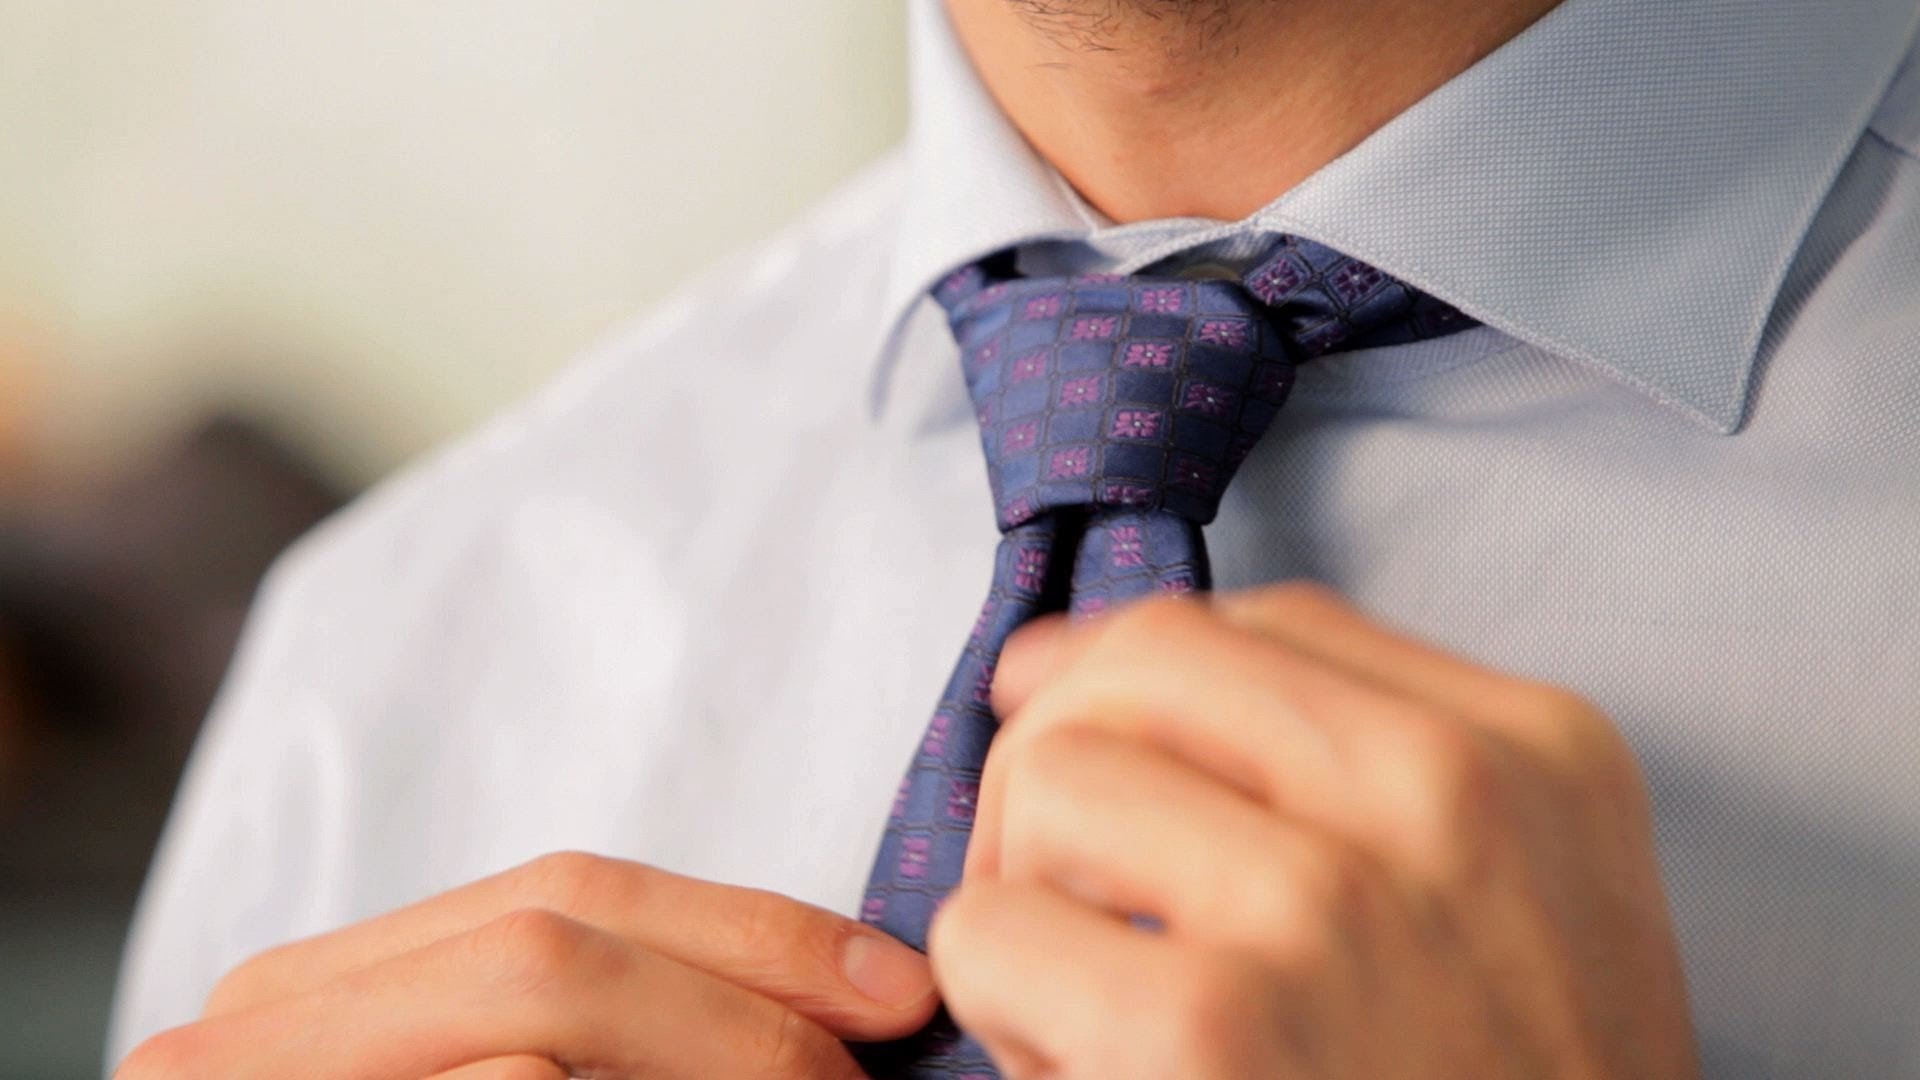 Галстук перевод. Галстук. Галстук мужской. Ослабленный галстук. Мужчина в галстуке.